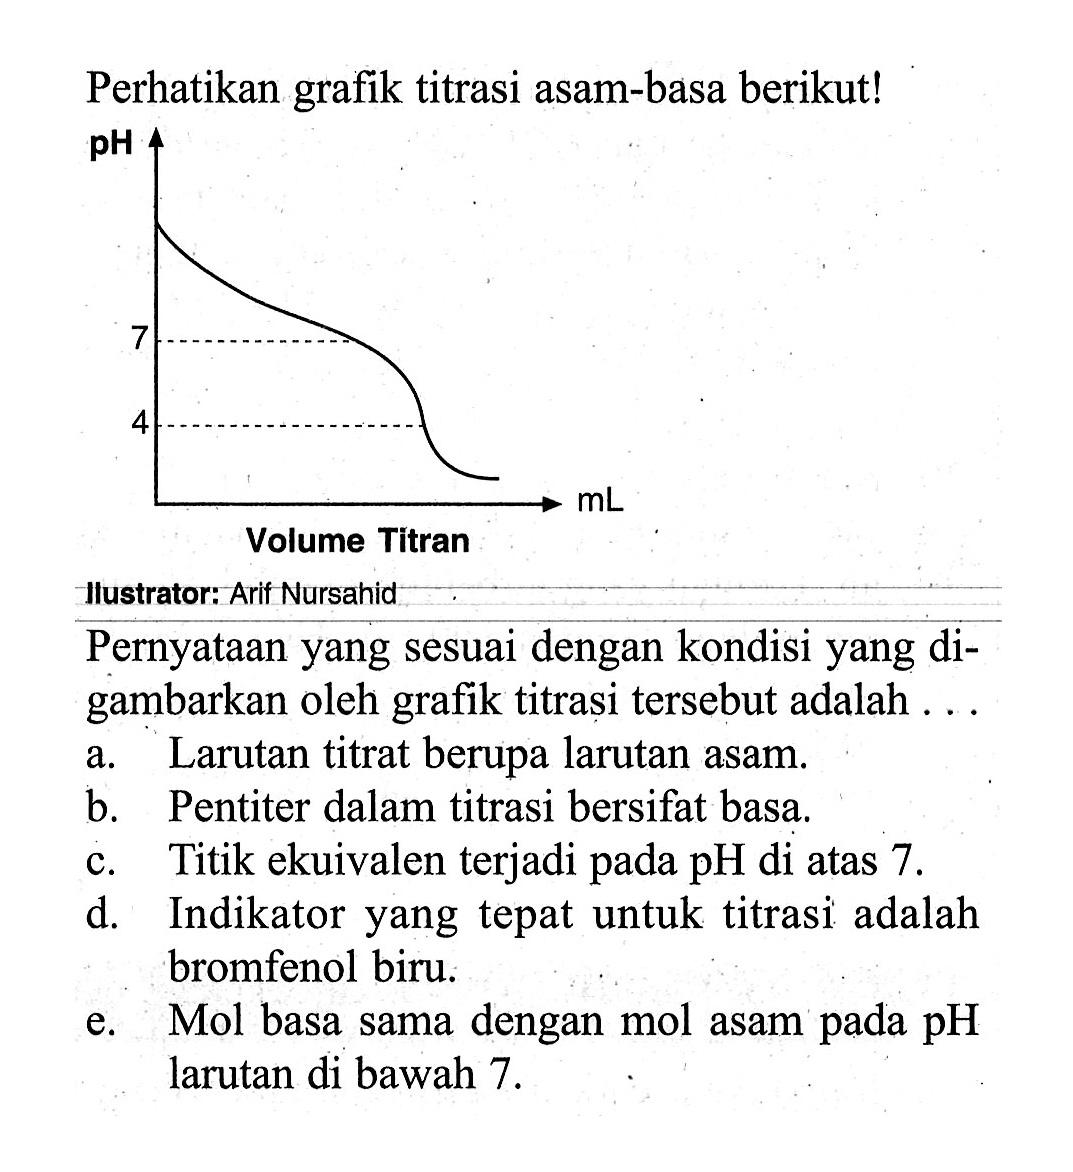 Perhatikan grafik titrasi asam-basa berikut! pH 7 4 Volume Titran mL . Ilustrator: Arif NursahidPernyataan yang sesuai dengan kondisi yang digambarkan oleh grafik titrasi tersebut adalah ...a. Larutan titrat berupa larutan asam.b. Pentiter dalam titrasi bersifat basa.c. Titik ekuivalen terjadi pada pH di atas 7 .d. Indikator yang tepat untuk titrasi adalah bromfenol biru.e. Mol basa sama dengan mol asam pada  pH  larutan di bawah  7 . 